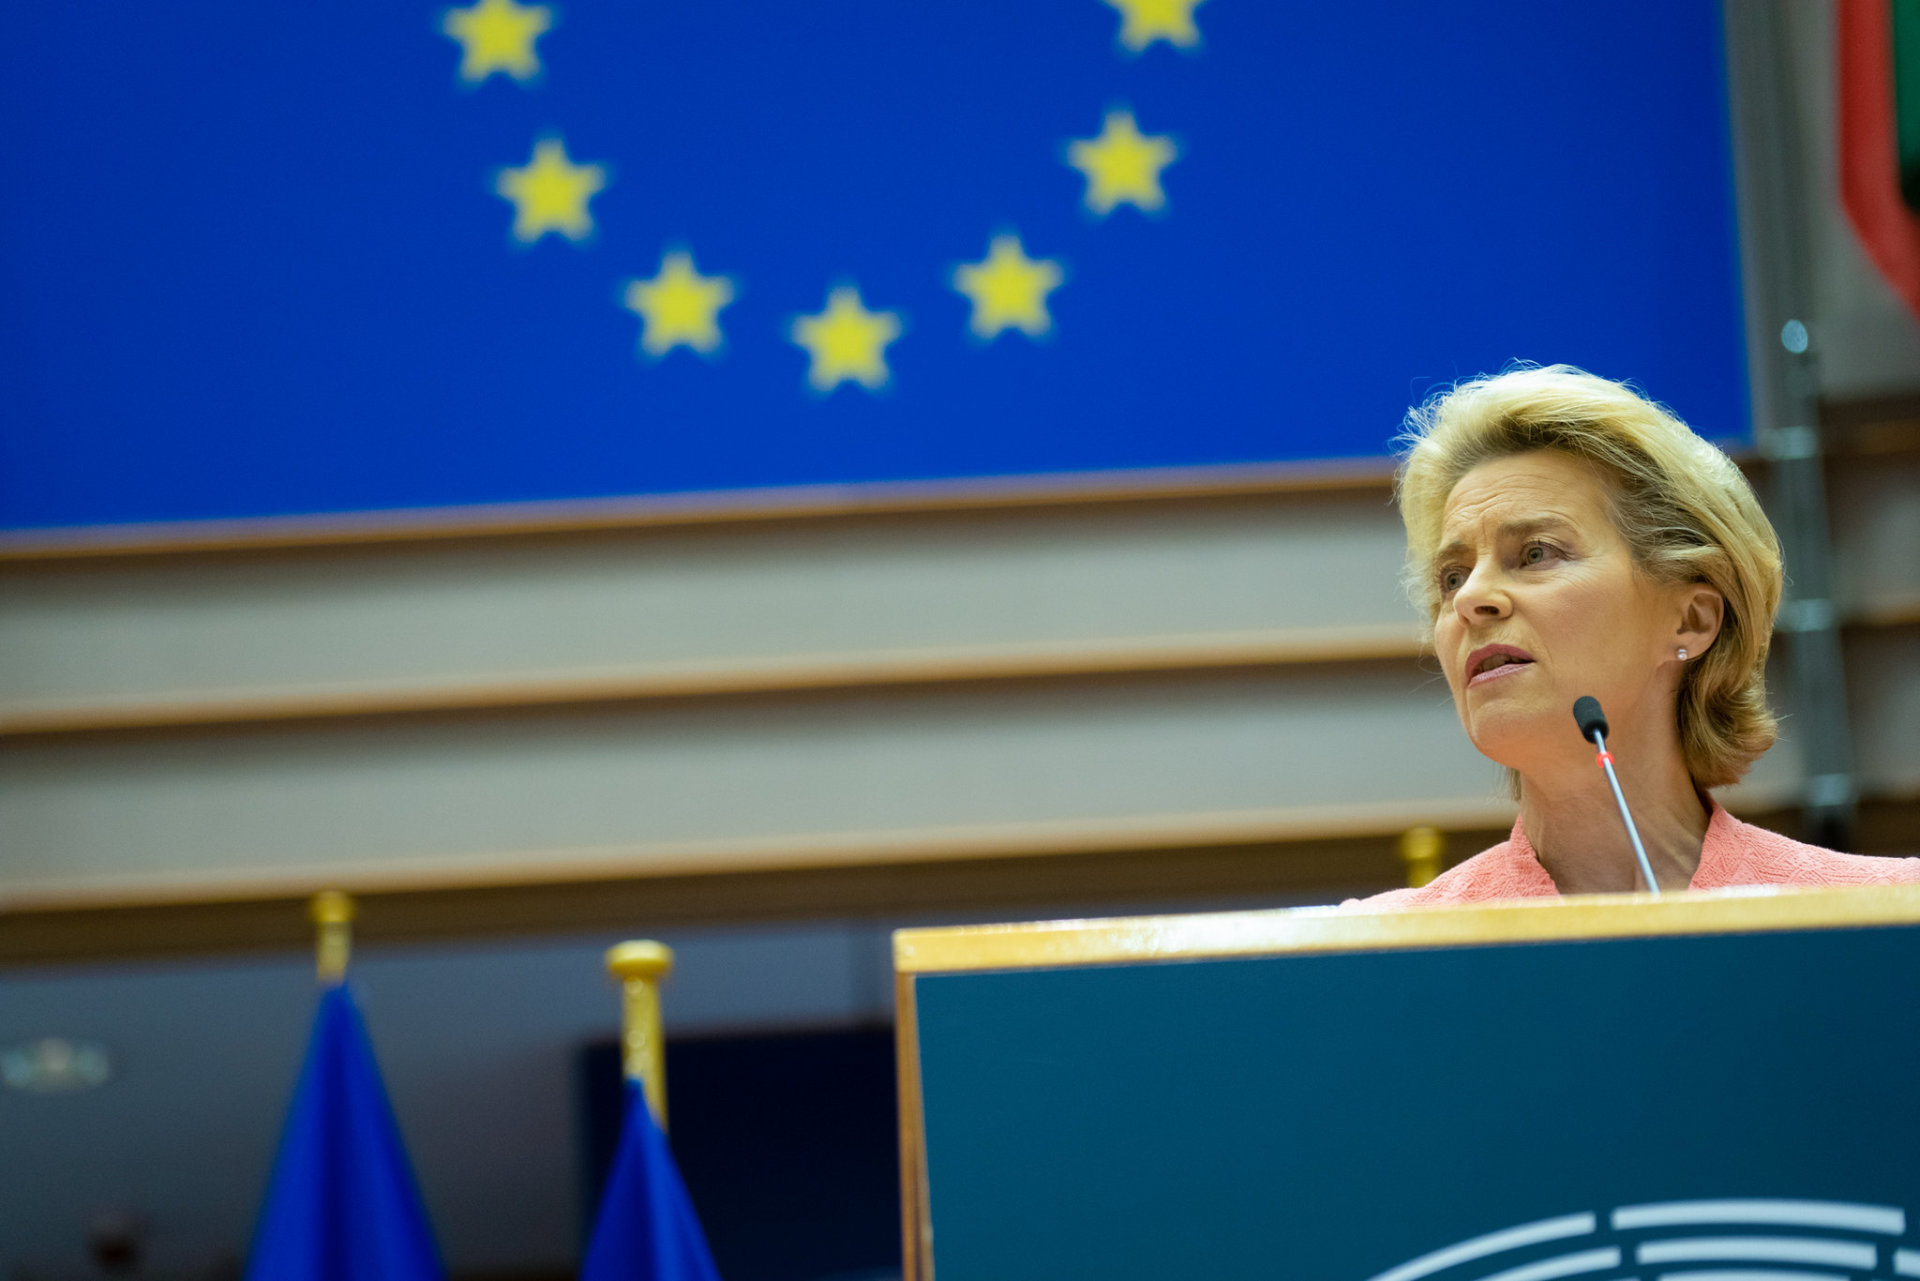 European Commission President Ursula von der Leyen speaking at the European Parliament in Brussels.